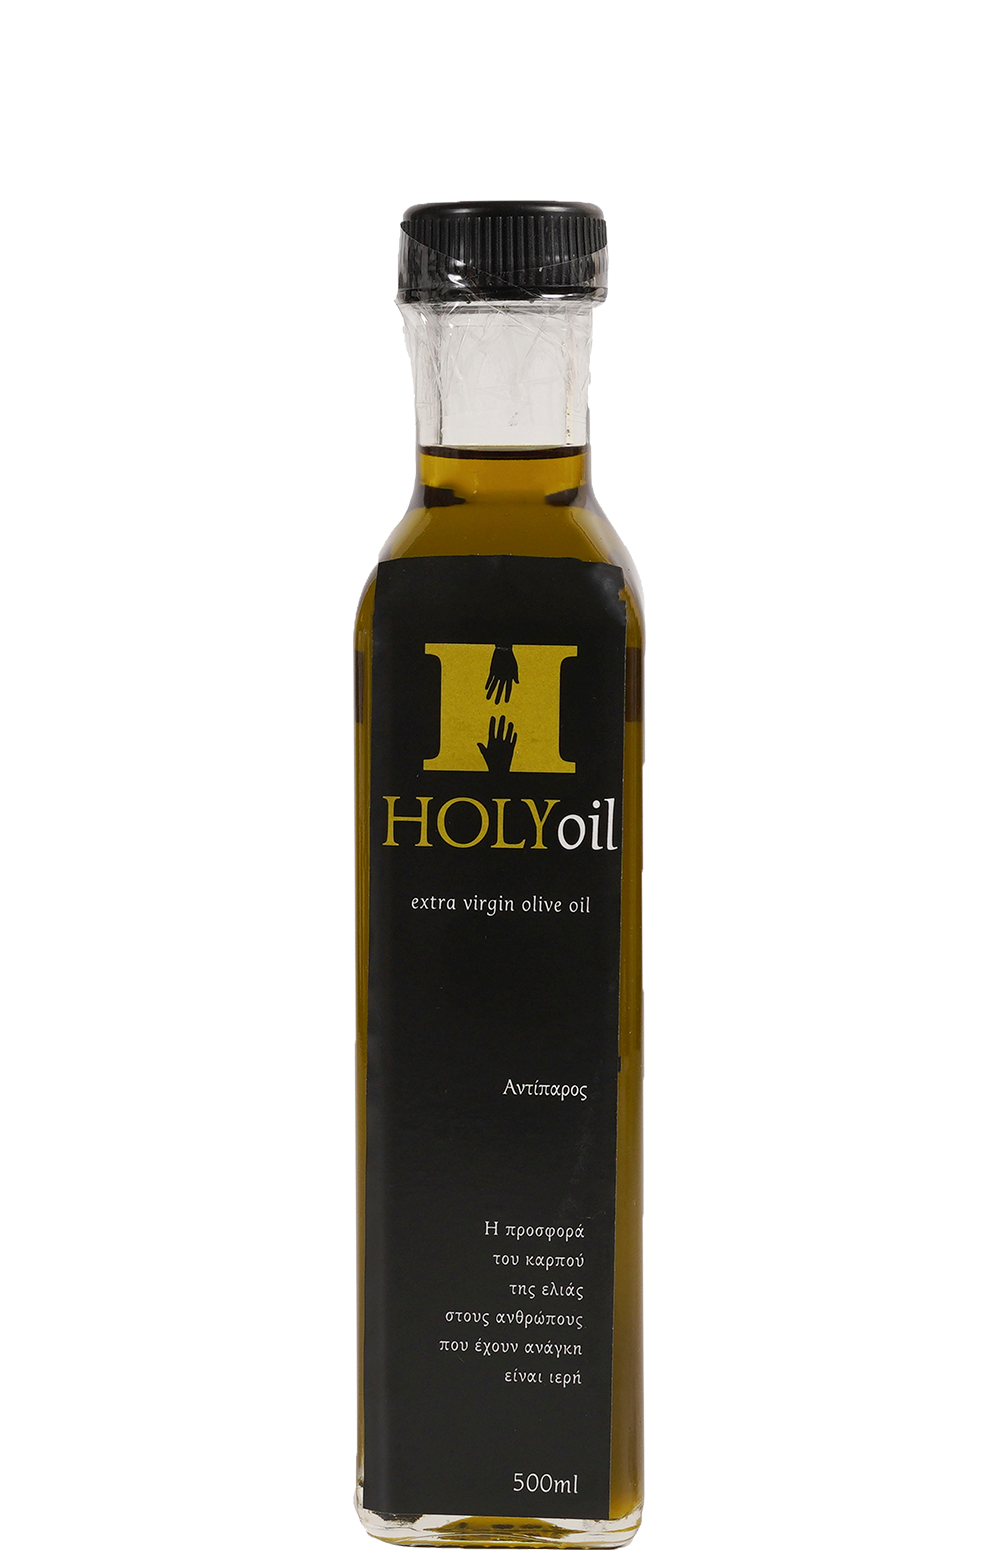 Holy oil